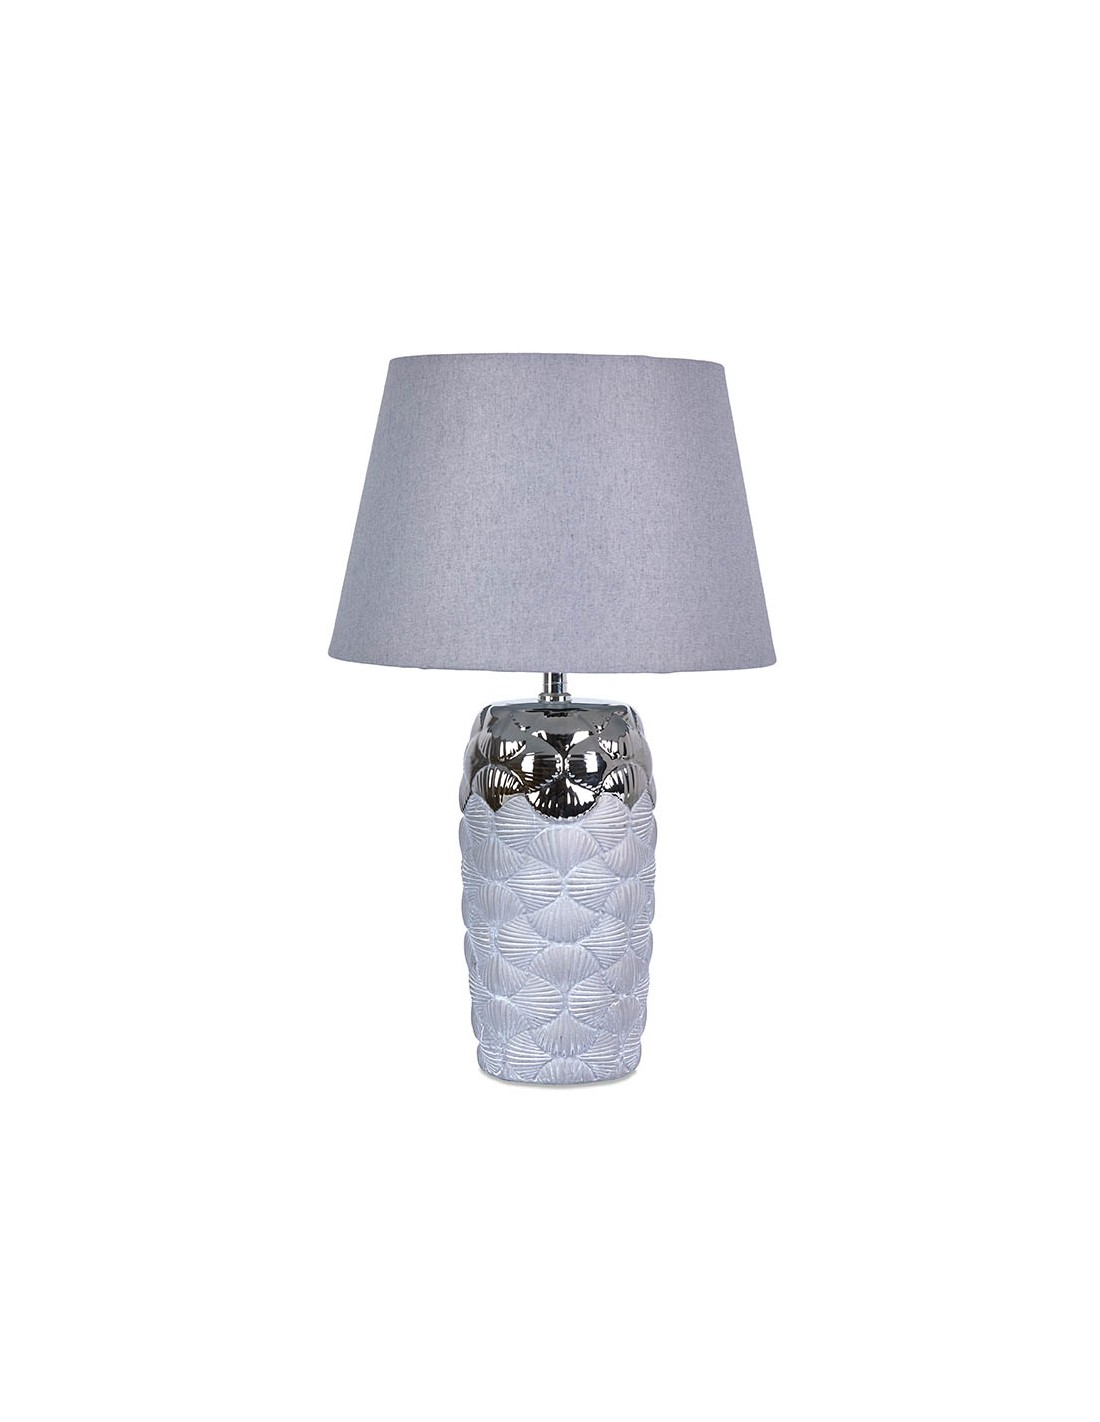 Lámpara de mesa Plata y gris tulipa gris conchas - Deseos Detalles